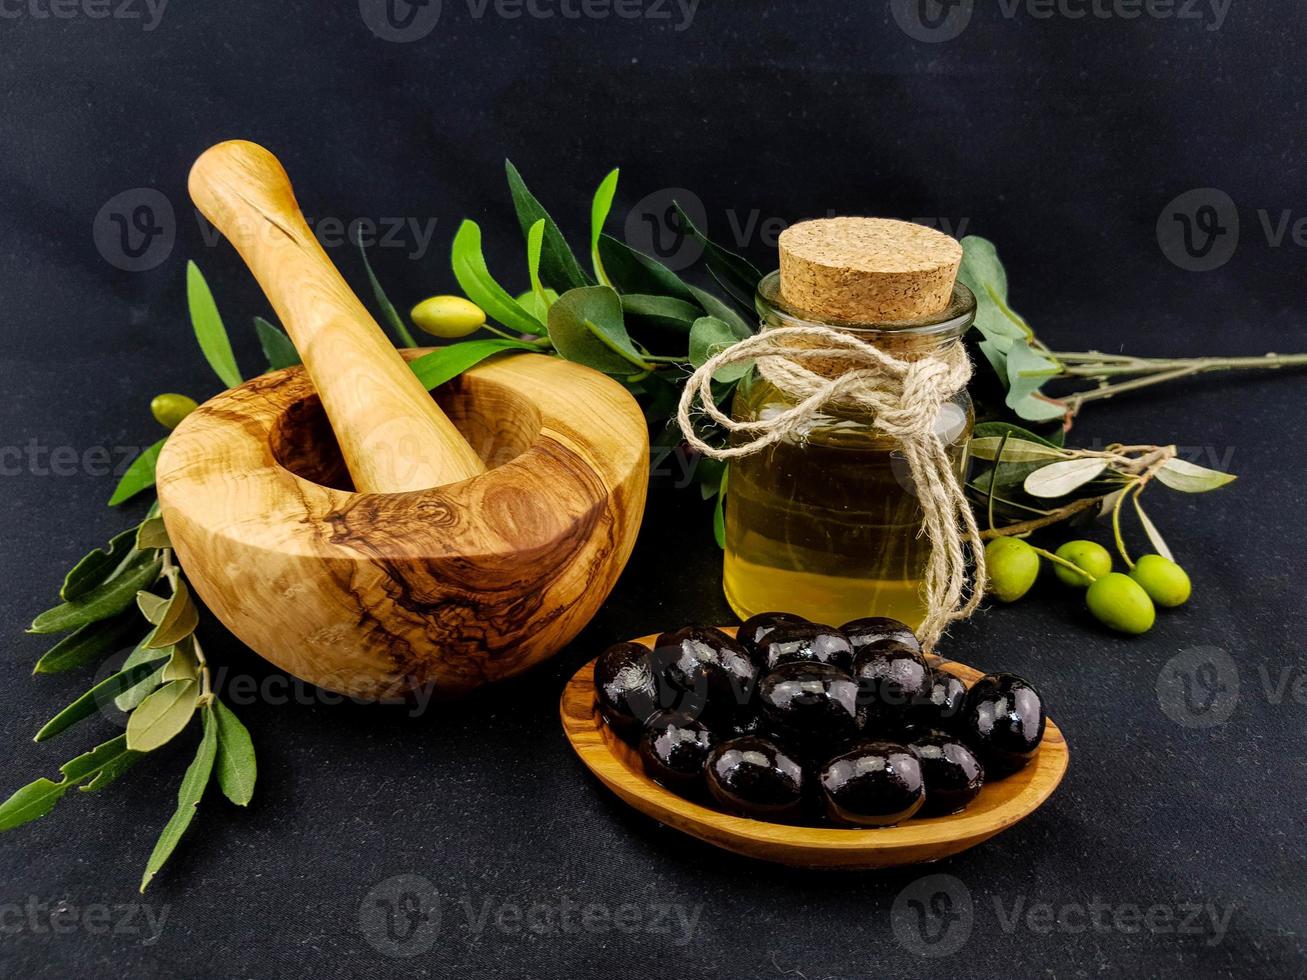 kallpressad olivolja med gren och frukt foto